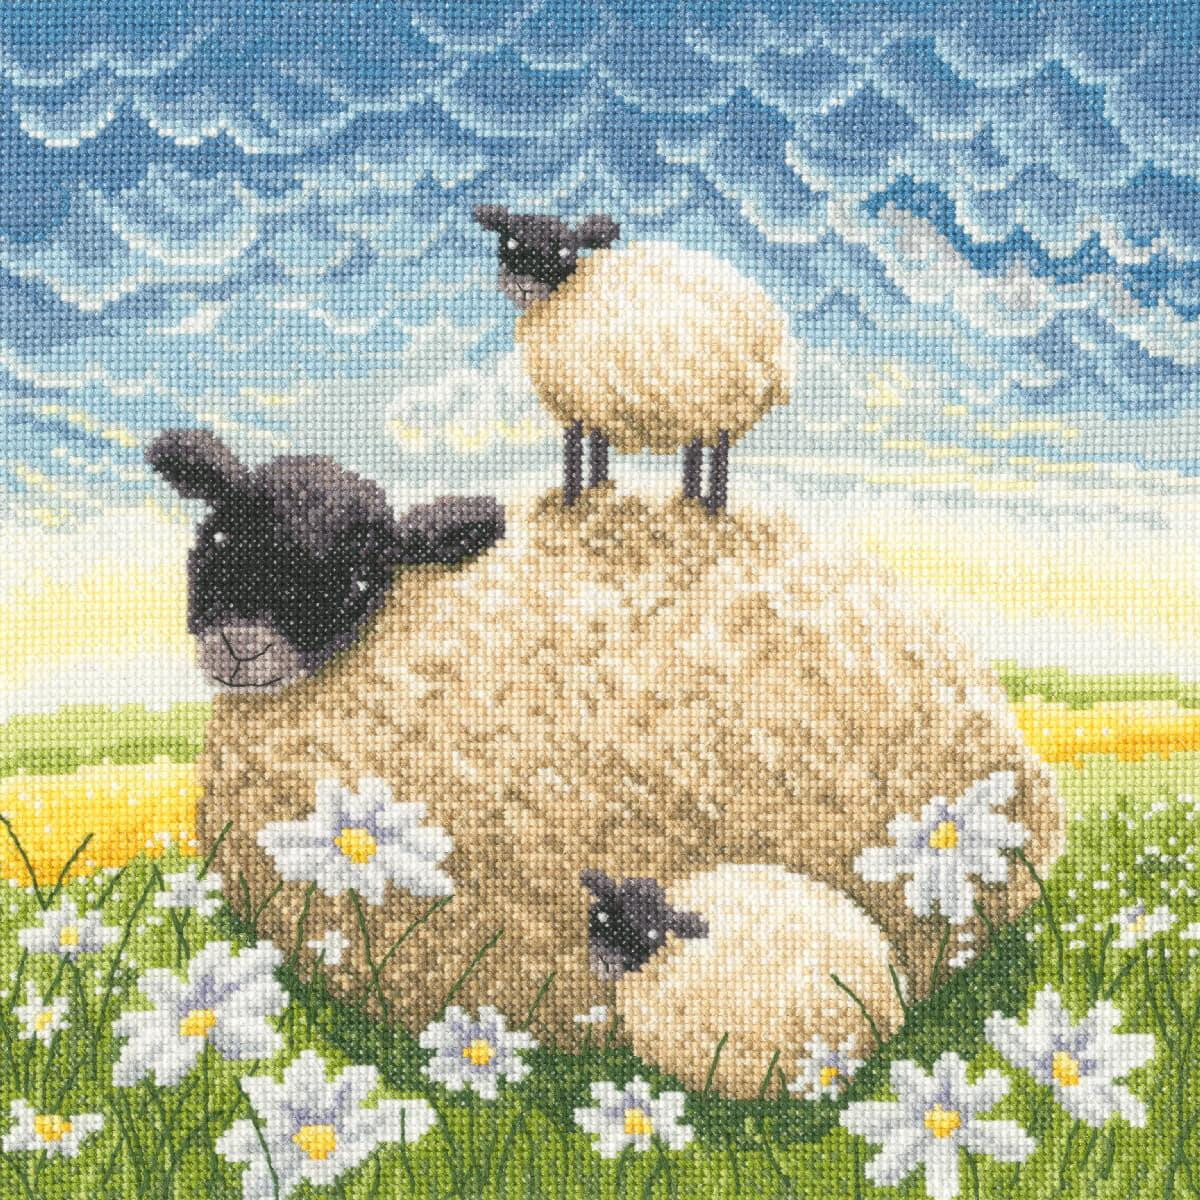 Een borduurpakket van Bothy Threads laat drie schapen in...